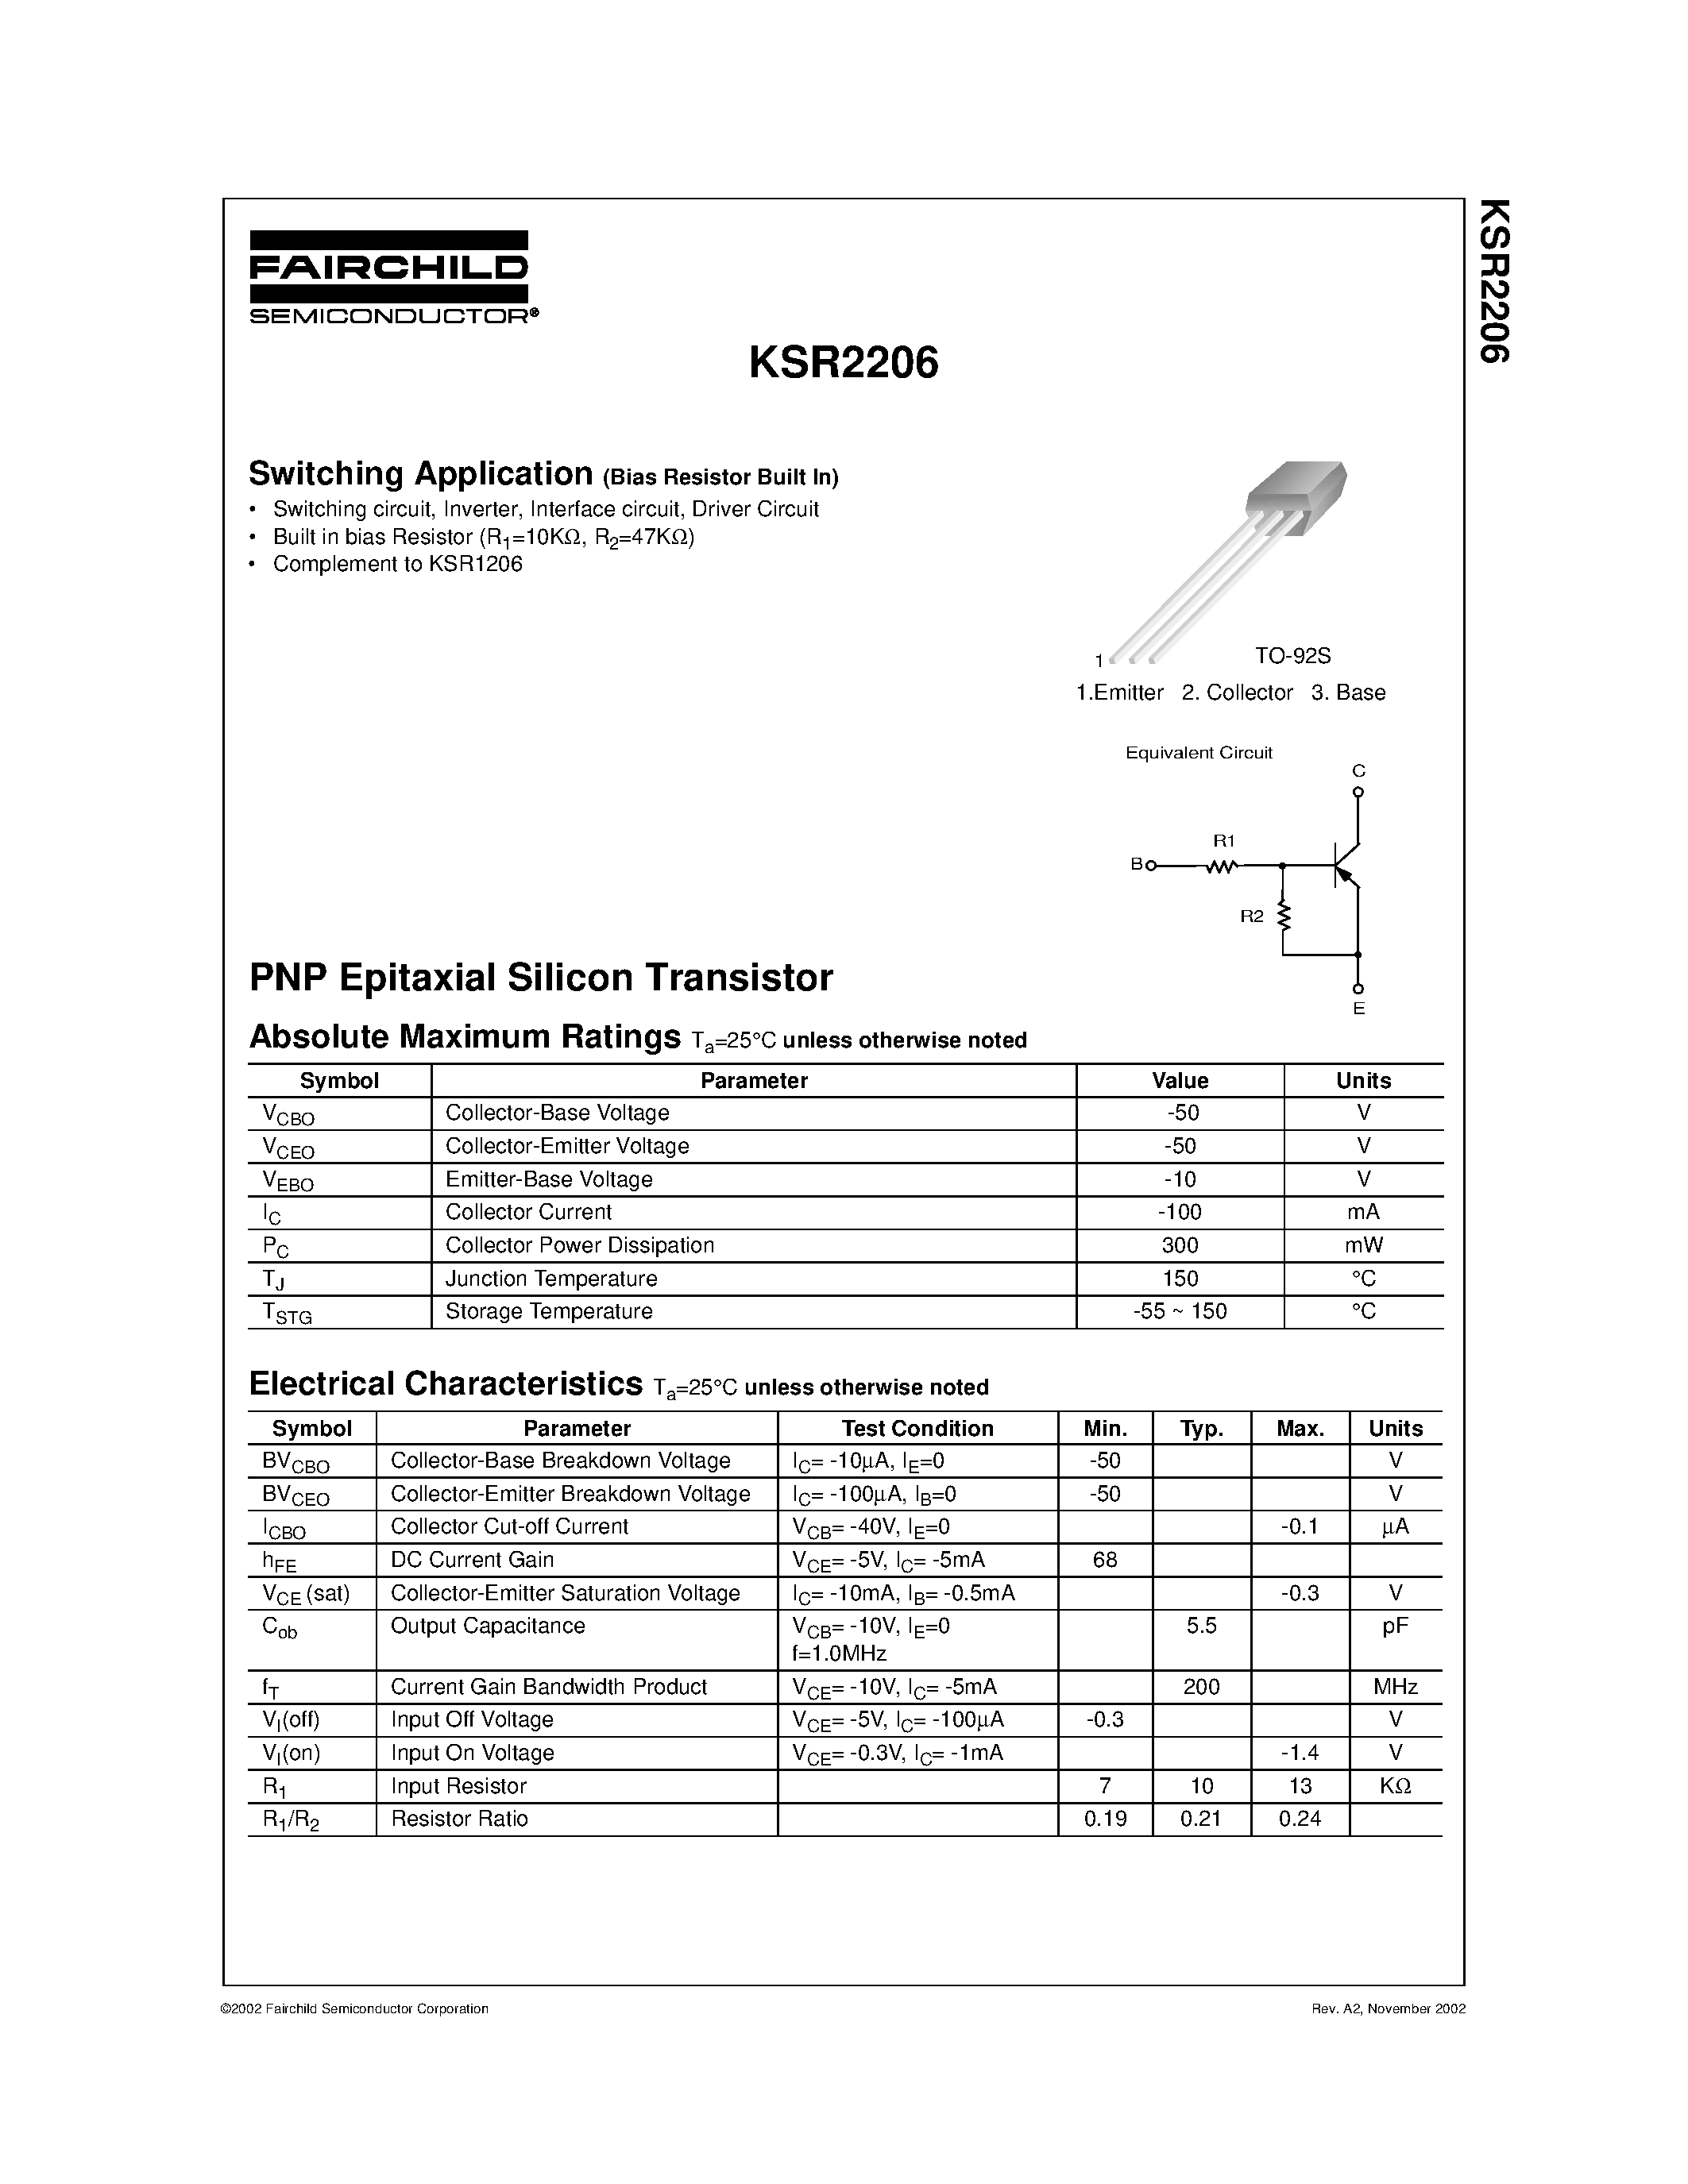 Datasheet KSR2206 - Switching Application page 1